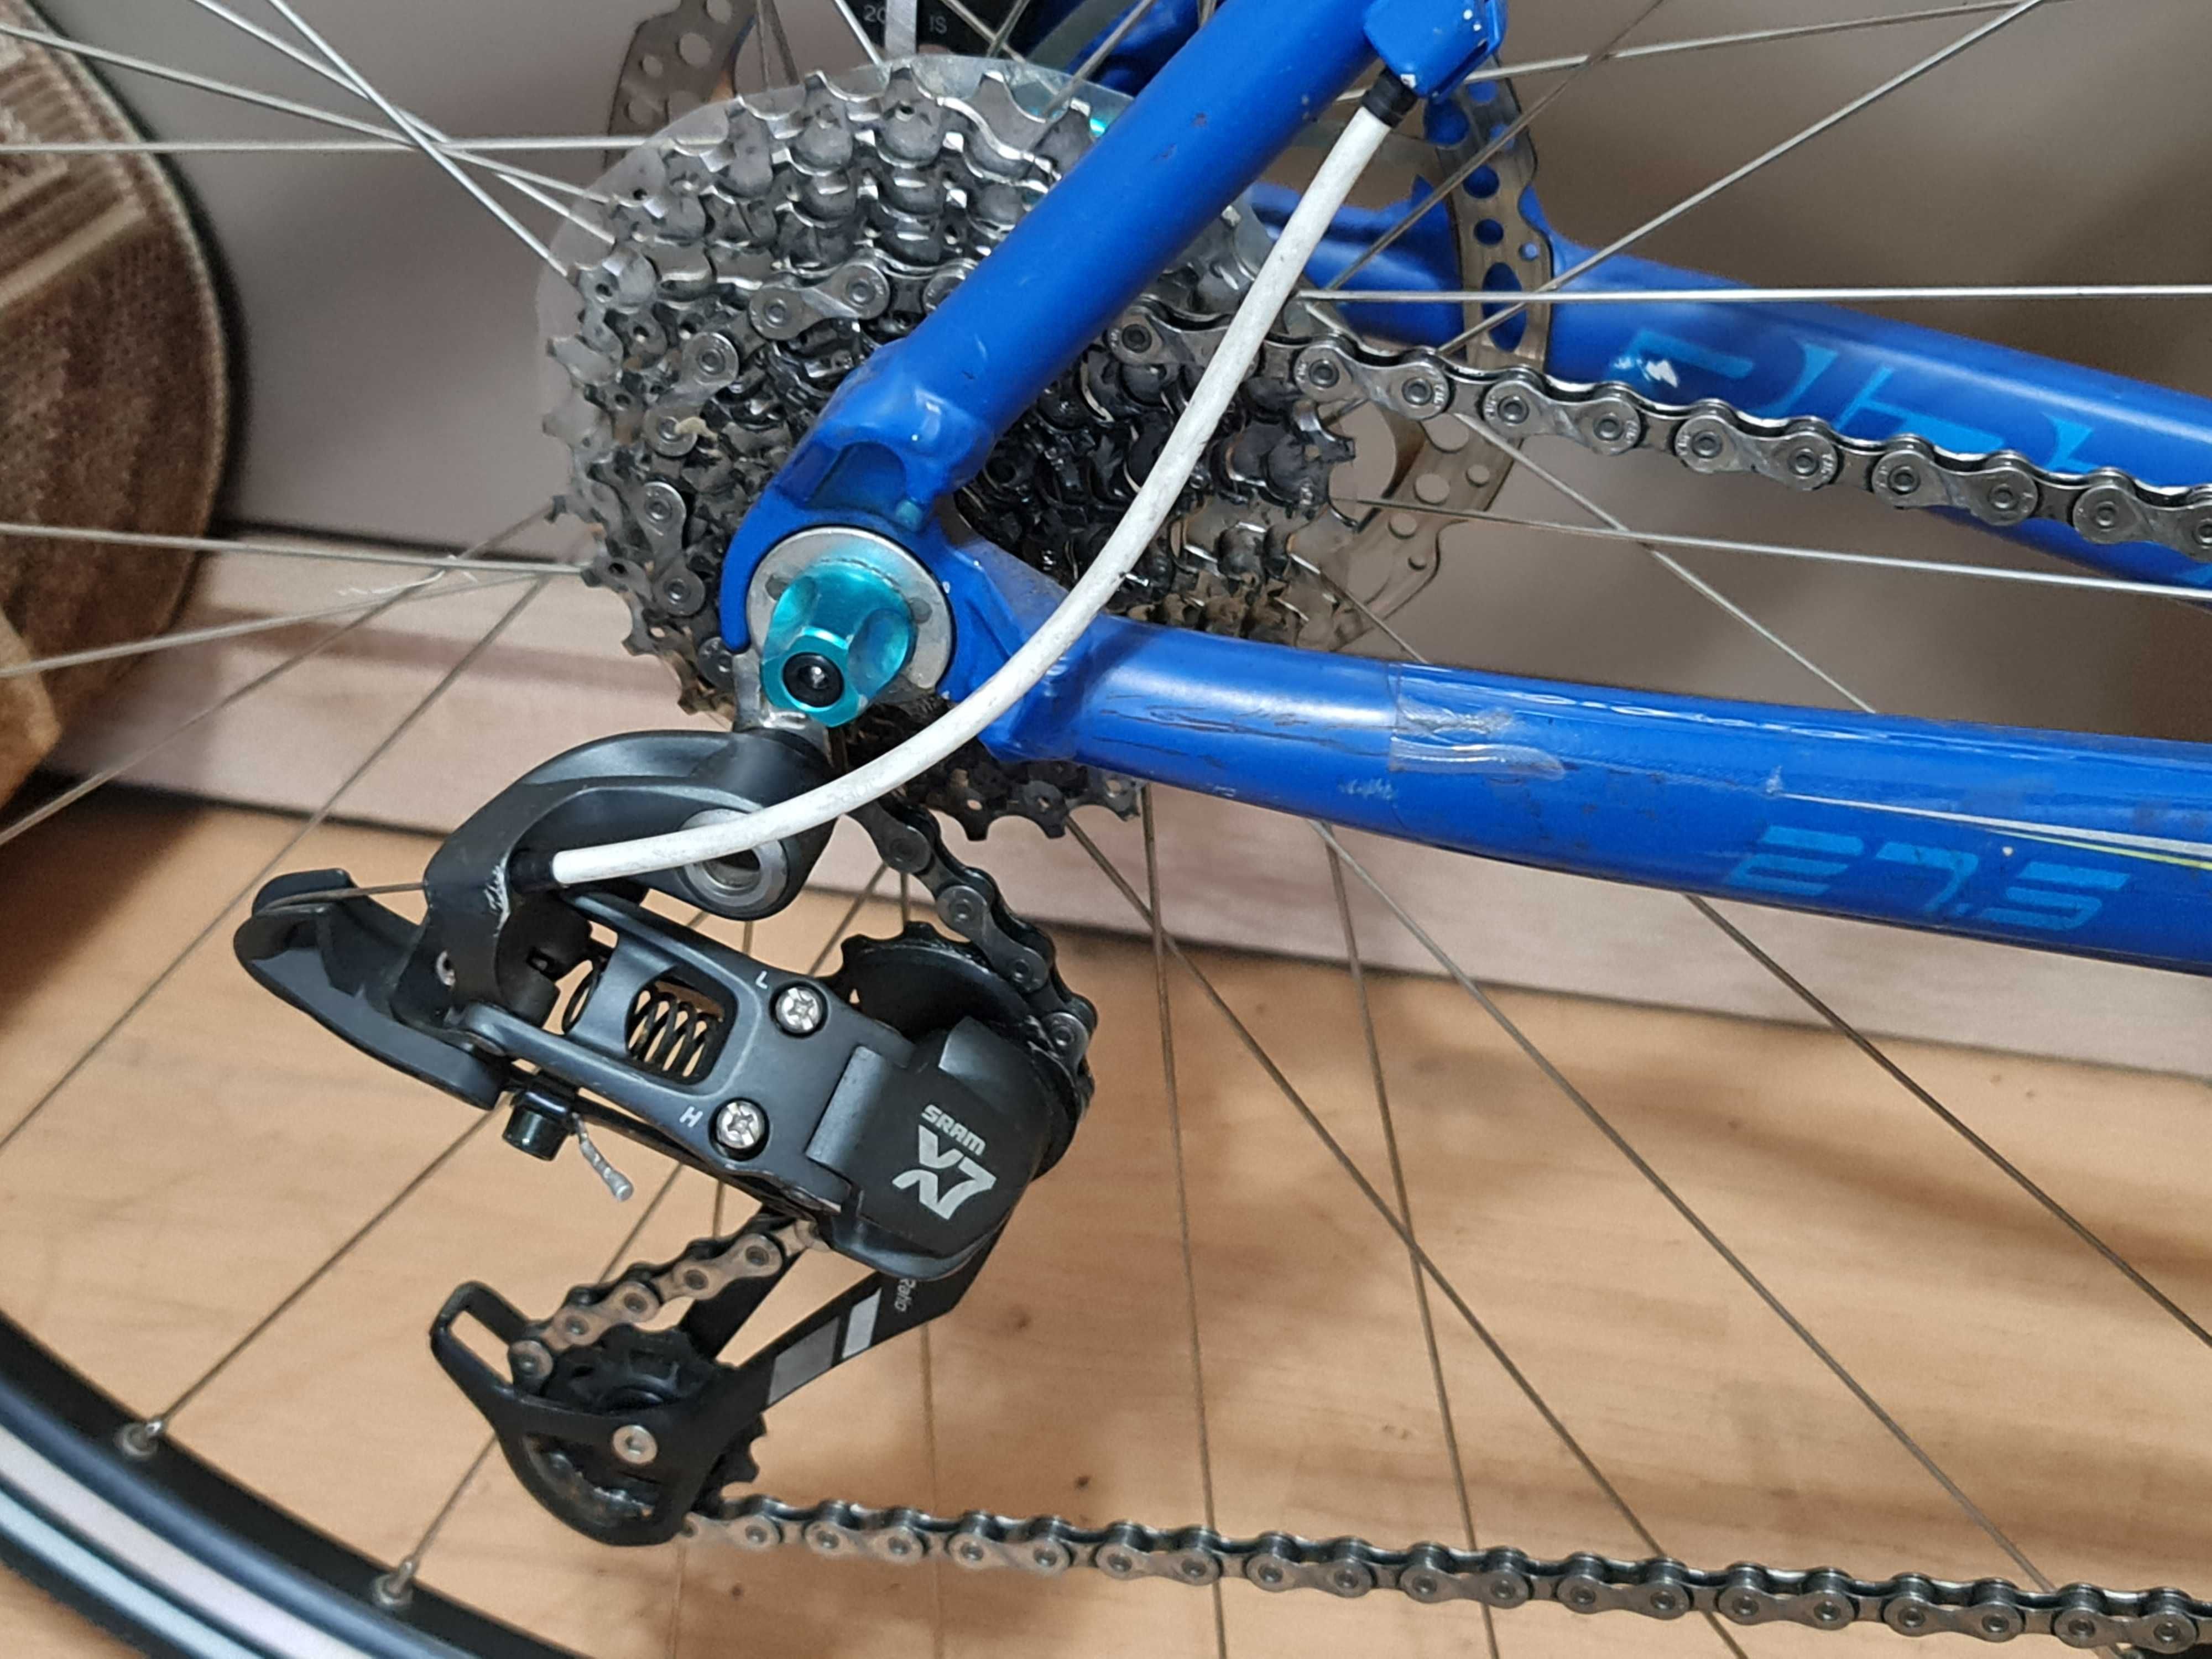 Bicicleta usoara semi cursiera (fitness) - 10 kg